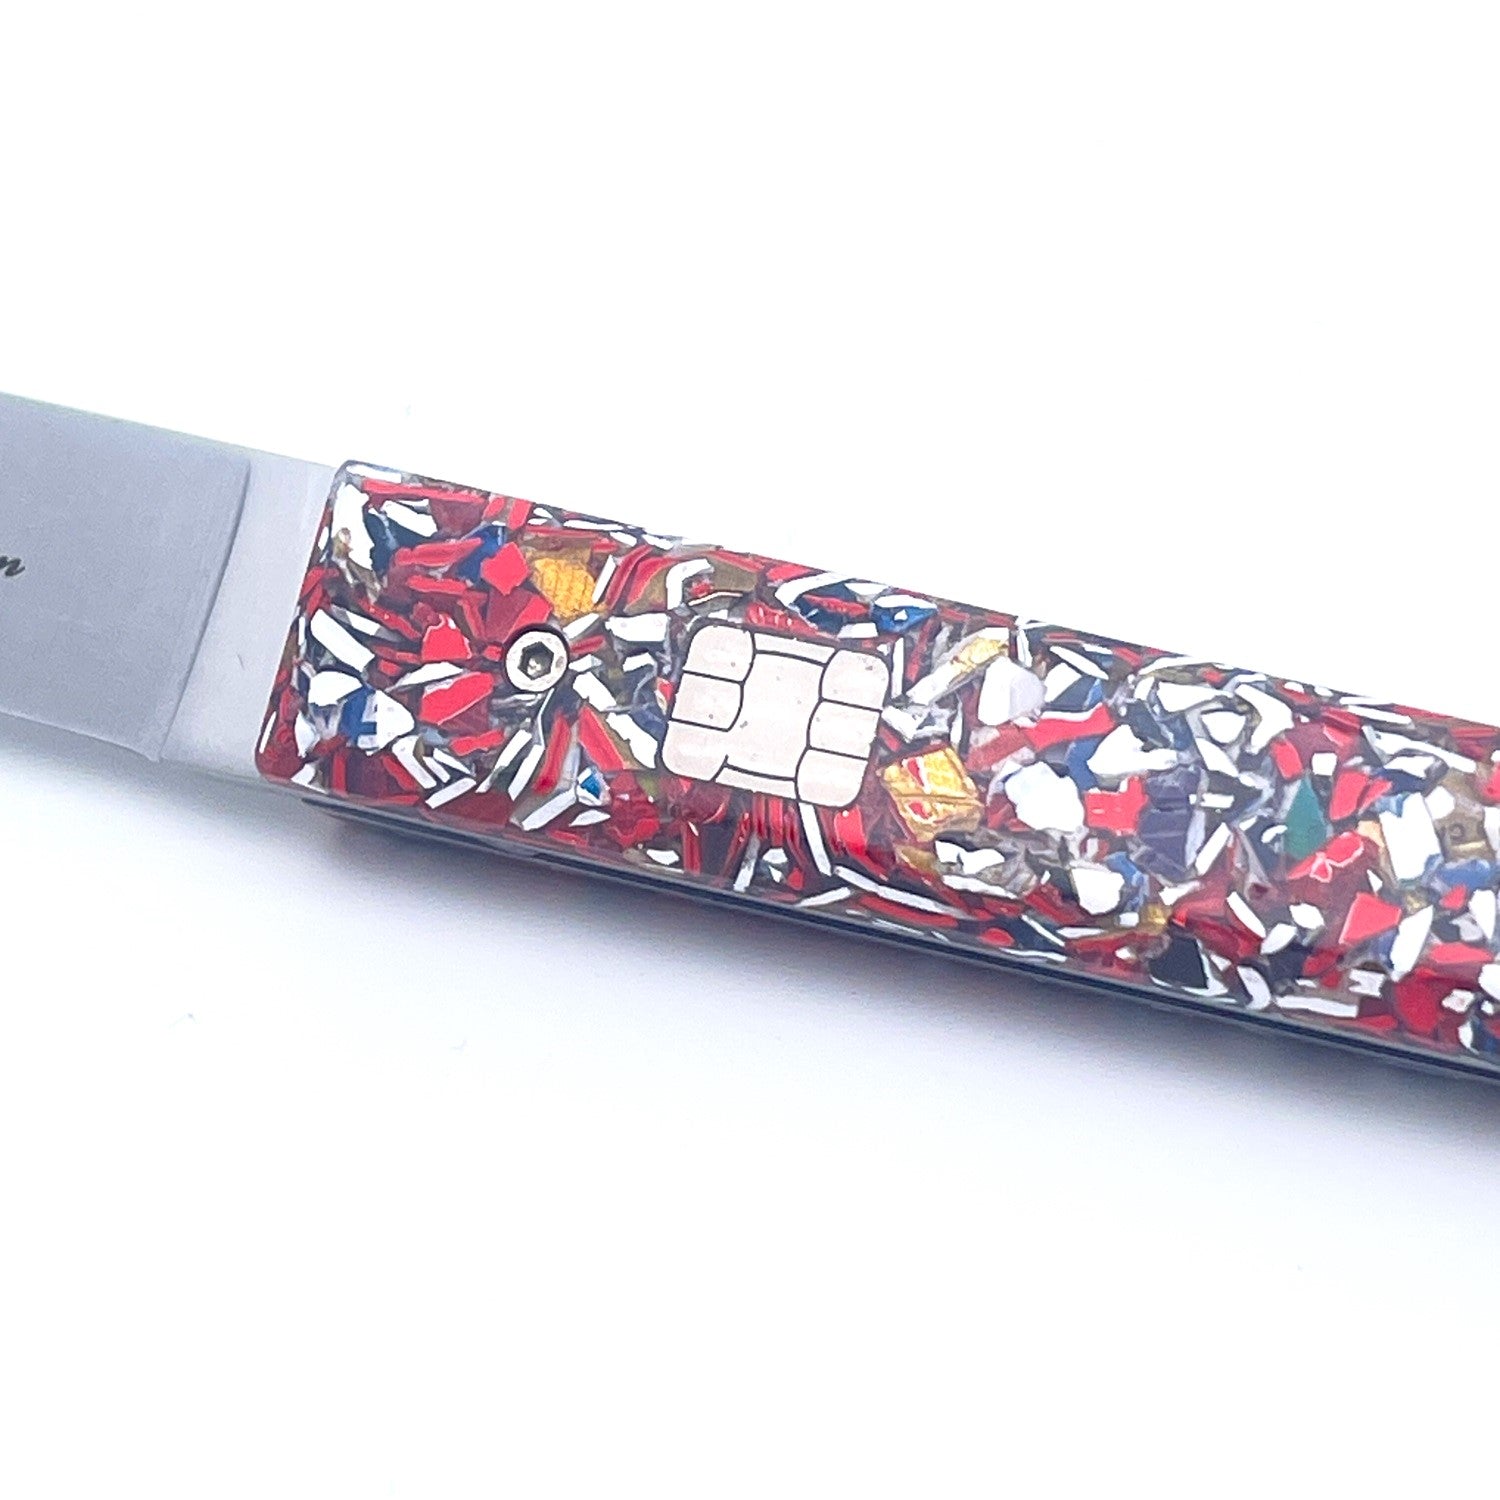 Bank card knife